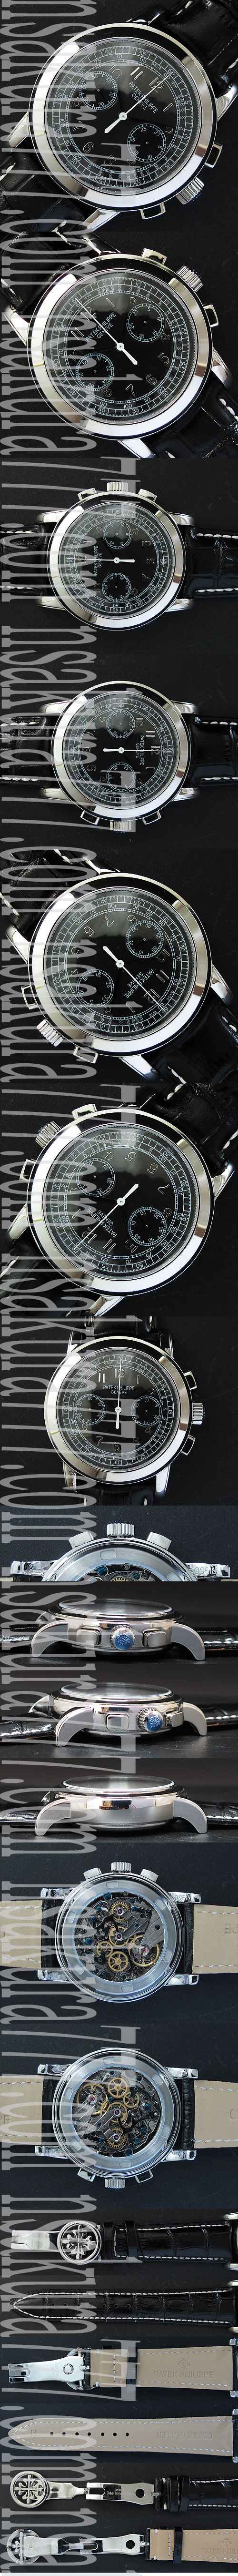 人気新作 PATEK PHILIPPEコピー時計 グランド・コンプリケーション, Asain 21600振動ムーブ 手巻き クロノグラフ